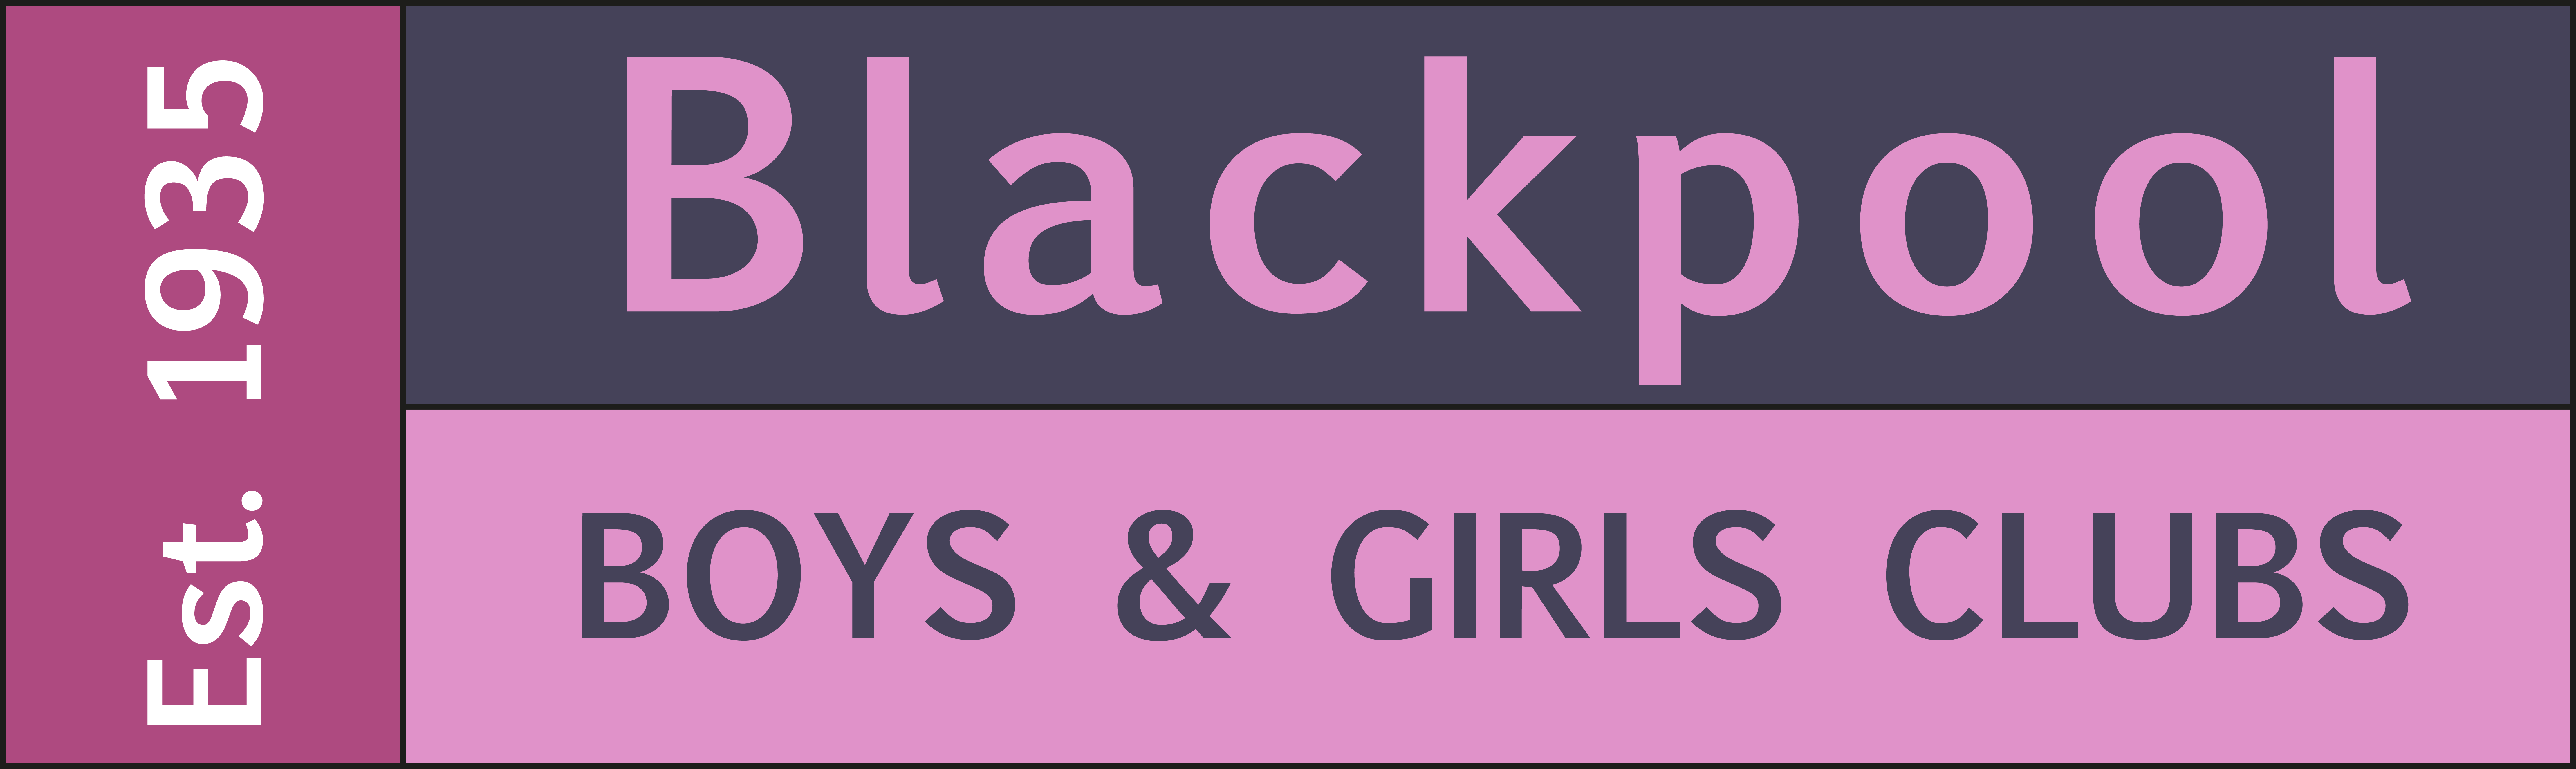 Blackpool Boys & Girls Club